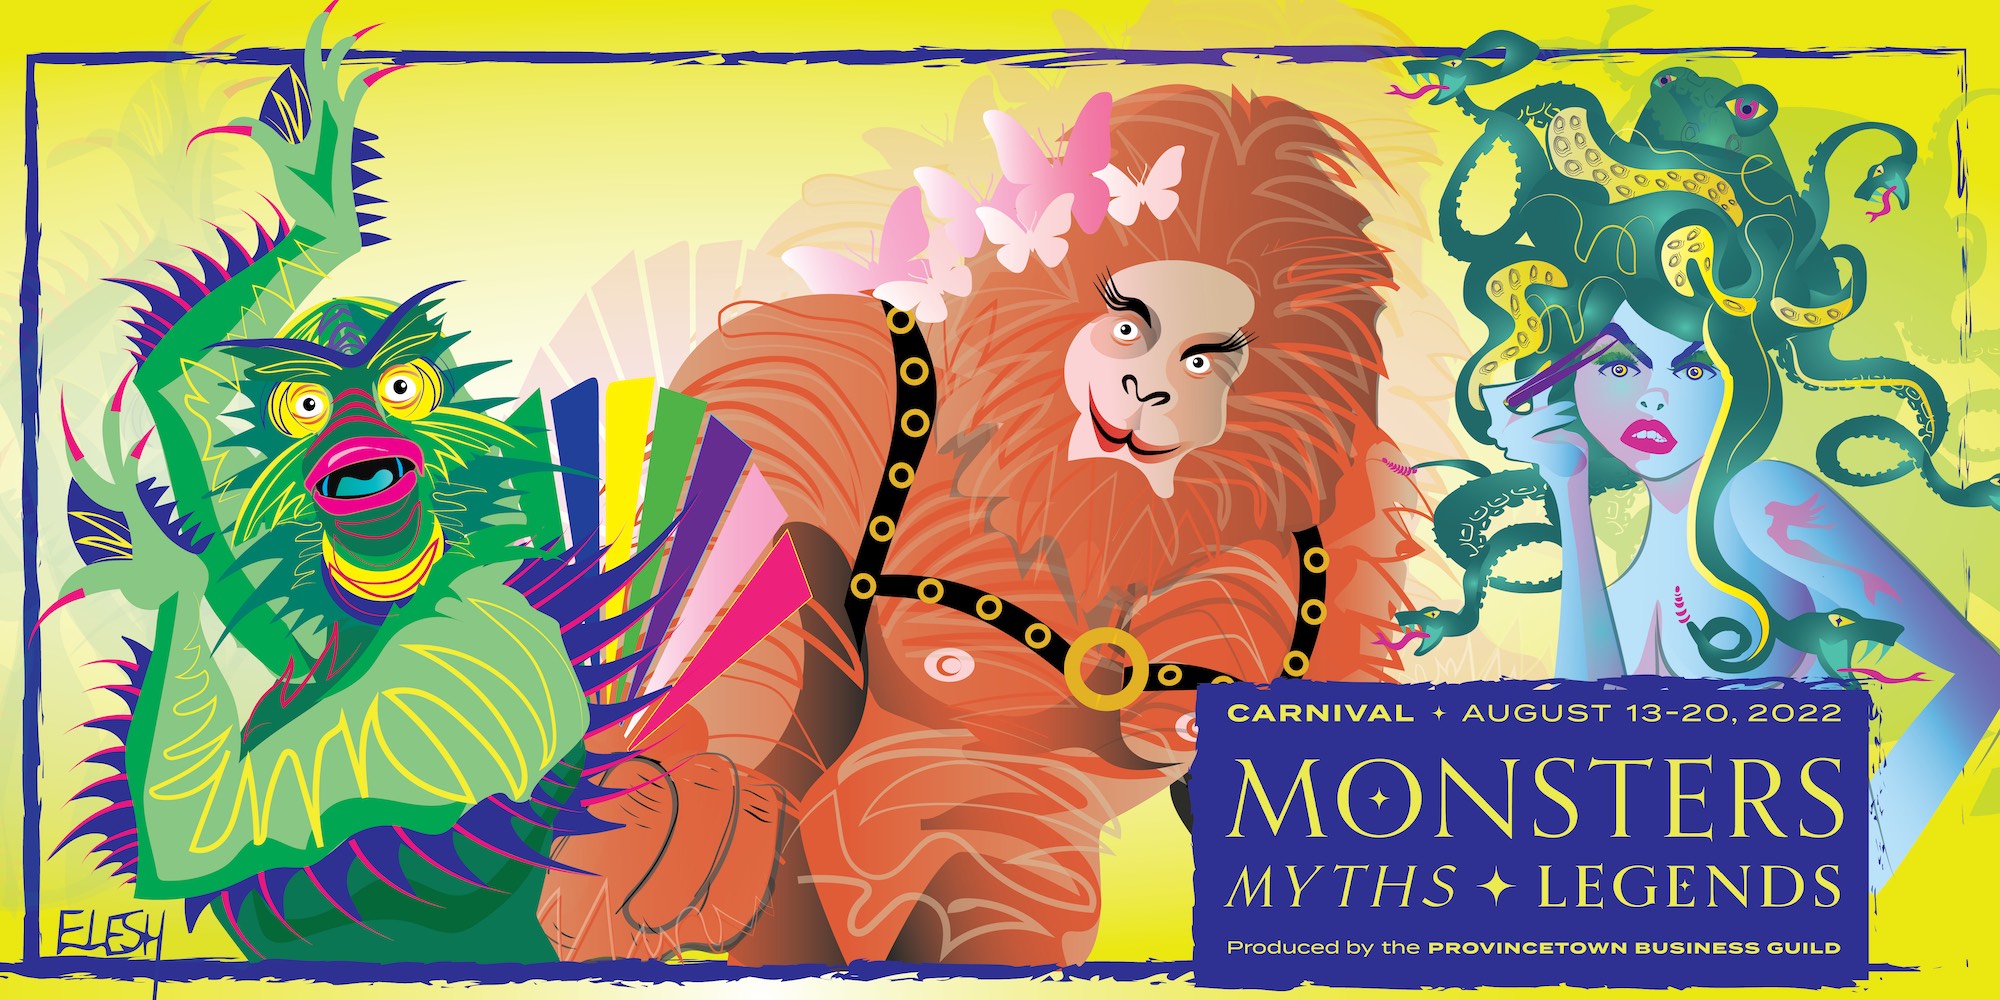 Carnival - Monsters, Myths & Legends